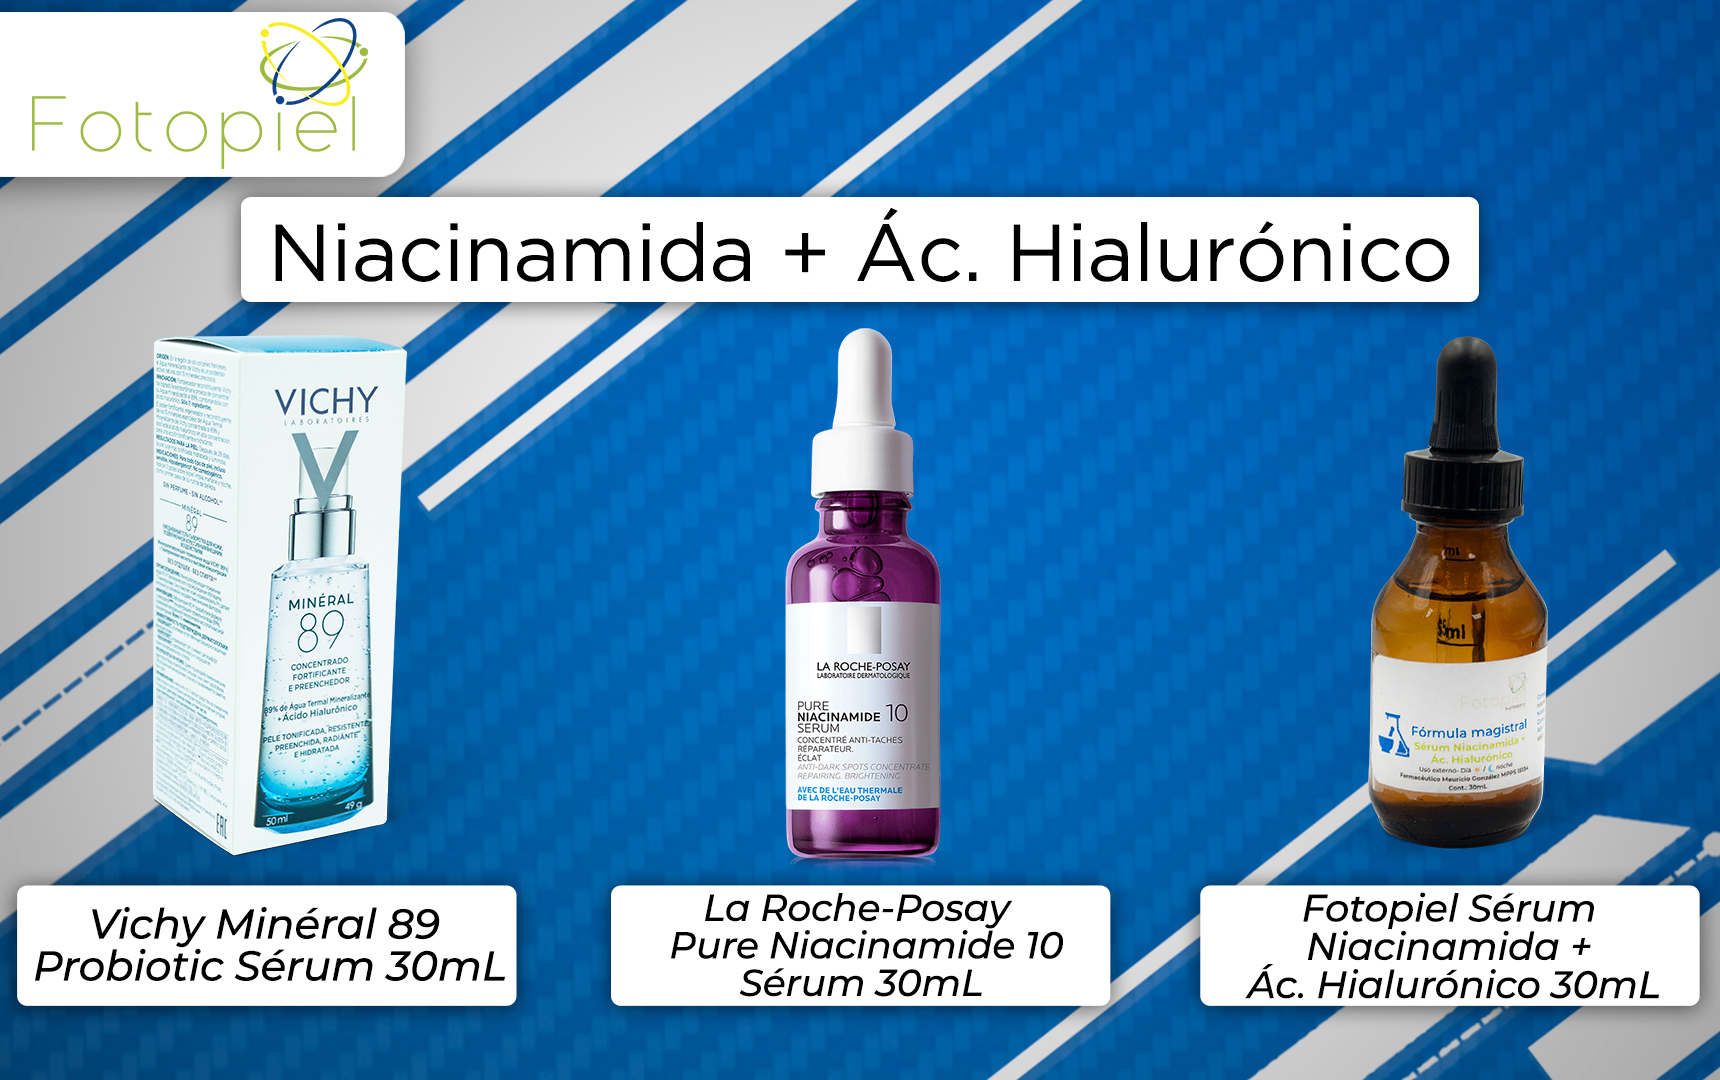 productos que contien niciacinamida & ácido hialurónico en su formulación y están disponibles en fotopiel